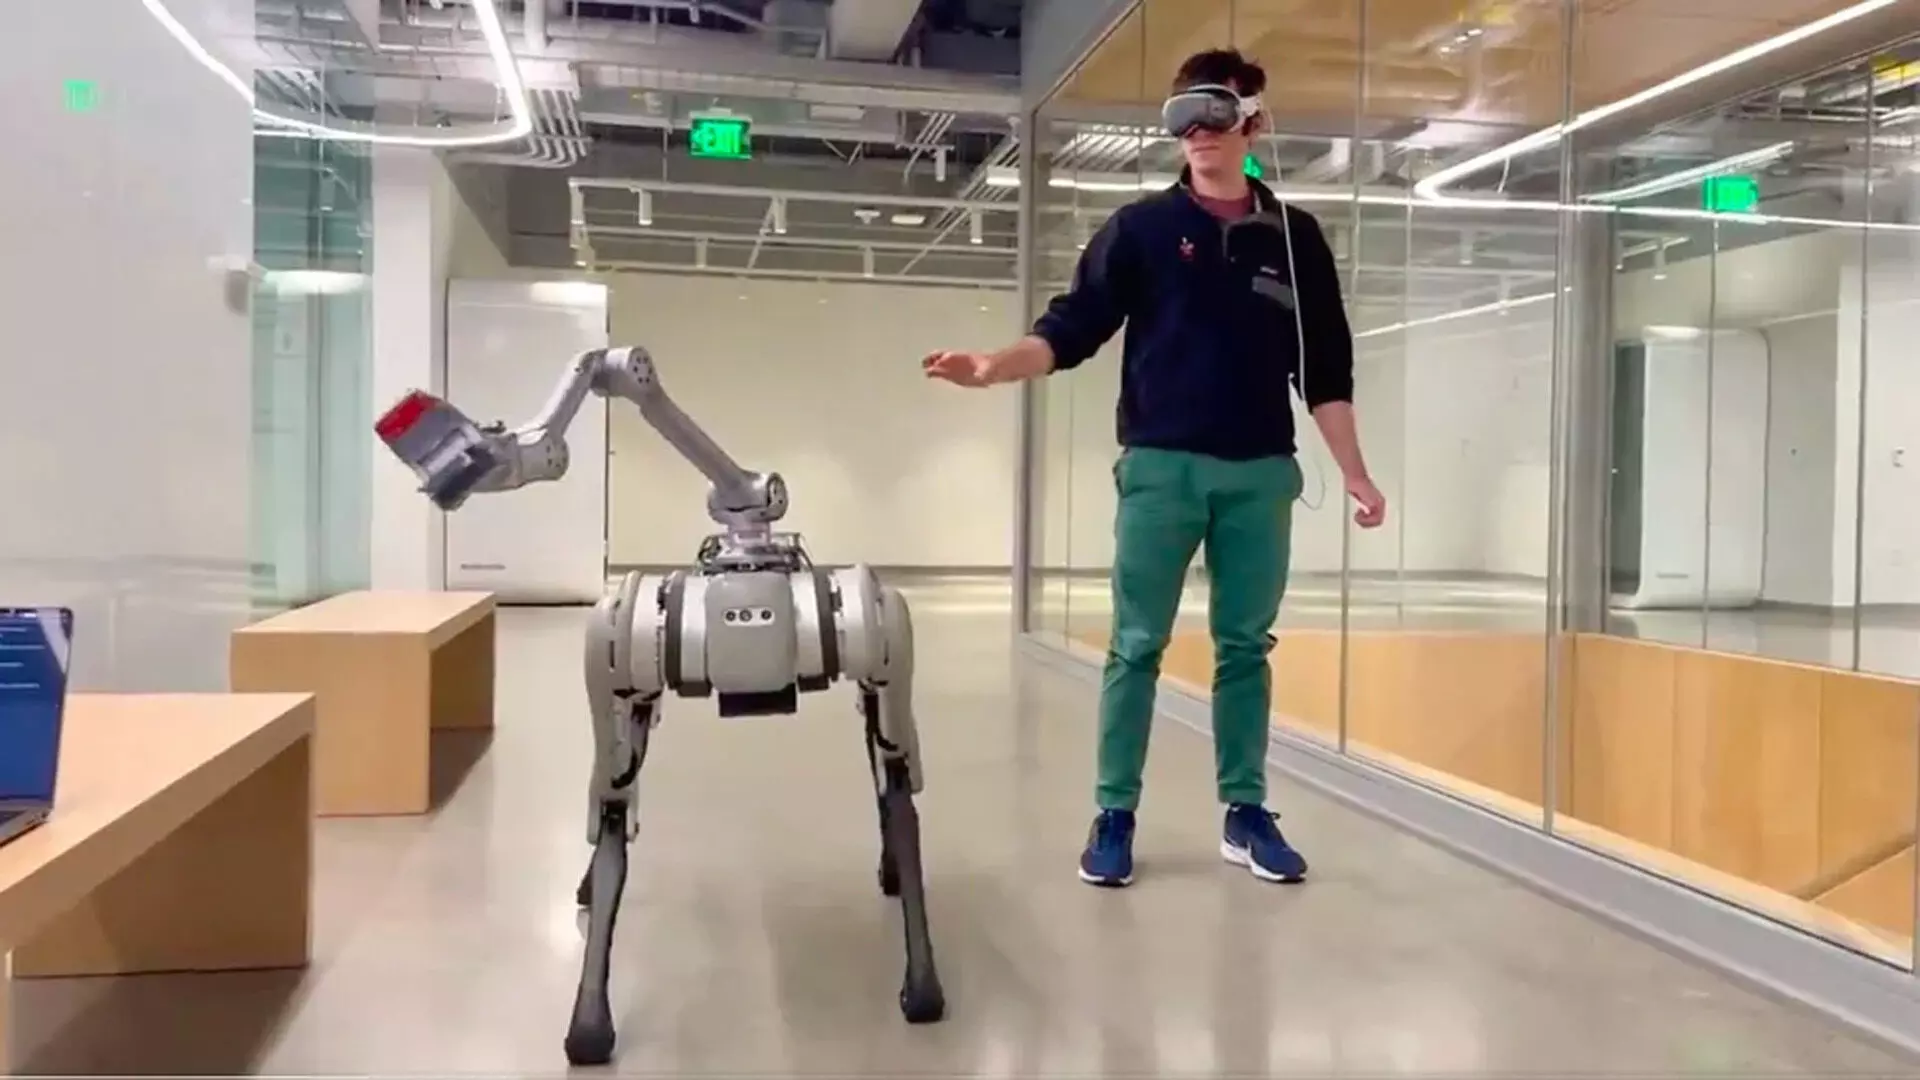 एप्पल विज़न प्रो पहनकर वैज्ञानिकों ने हाथों से कंट्रोल किया रोबोट, वीडियो